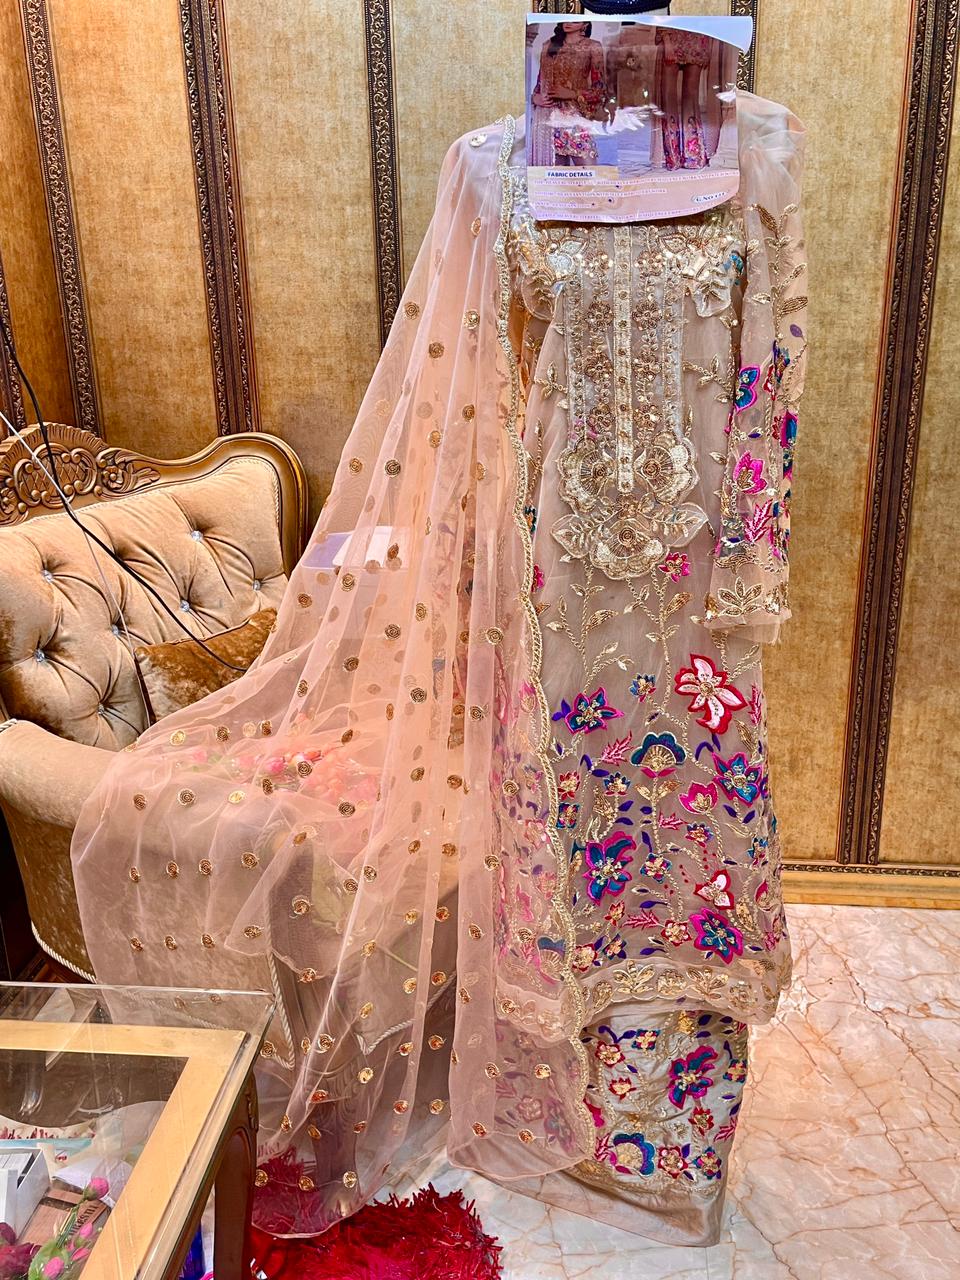 elaf azalia net grandeur trendy look salwar suit singal